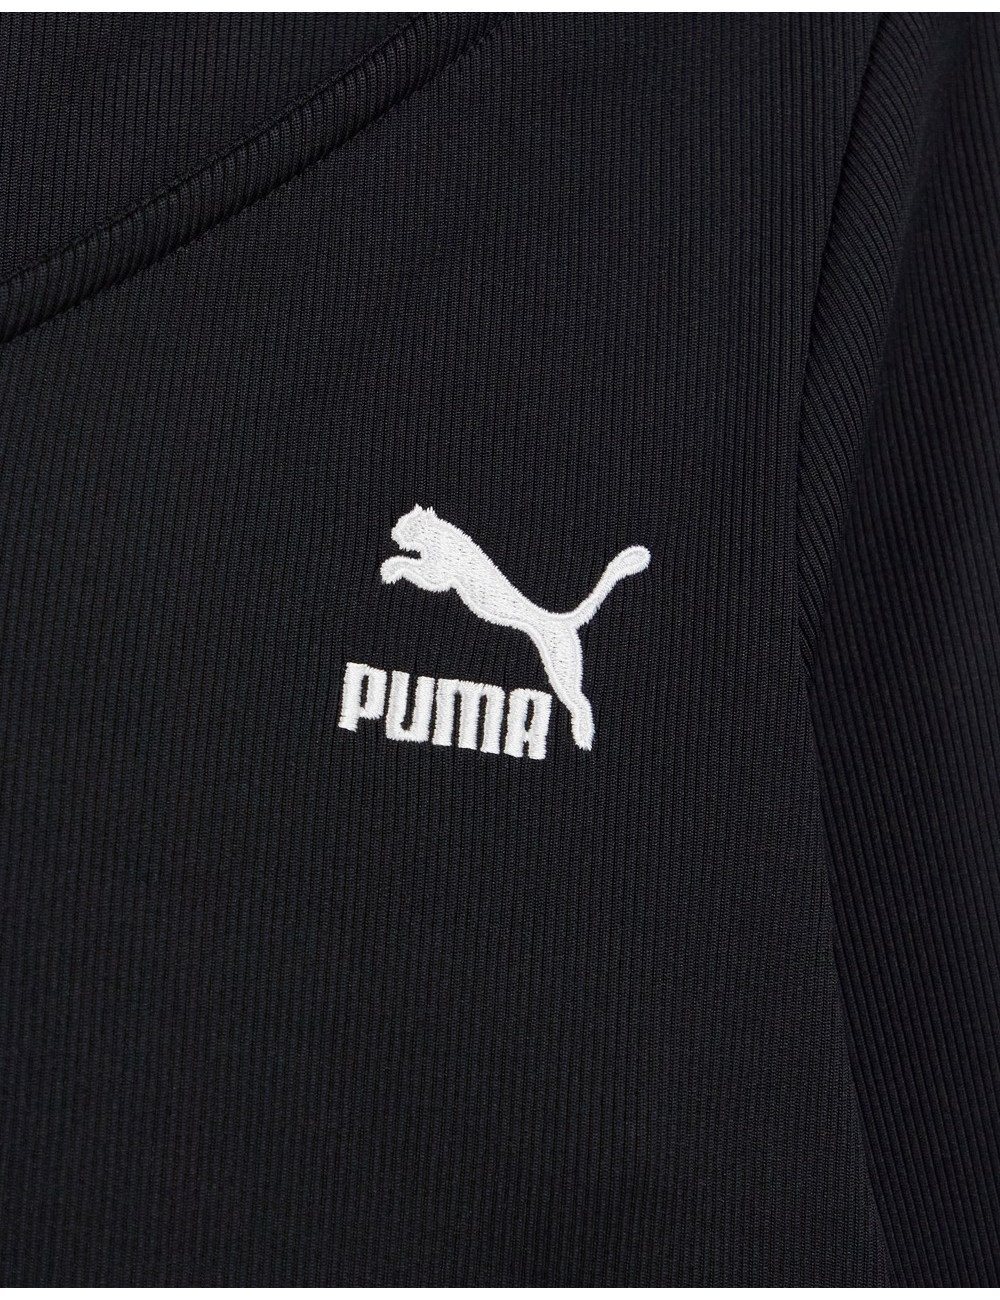 Puma Classic Long Sleeve...